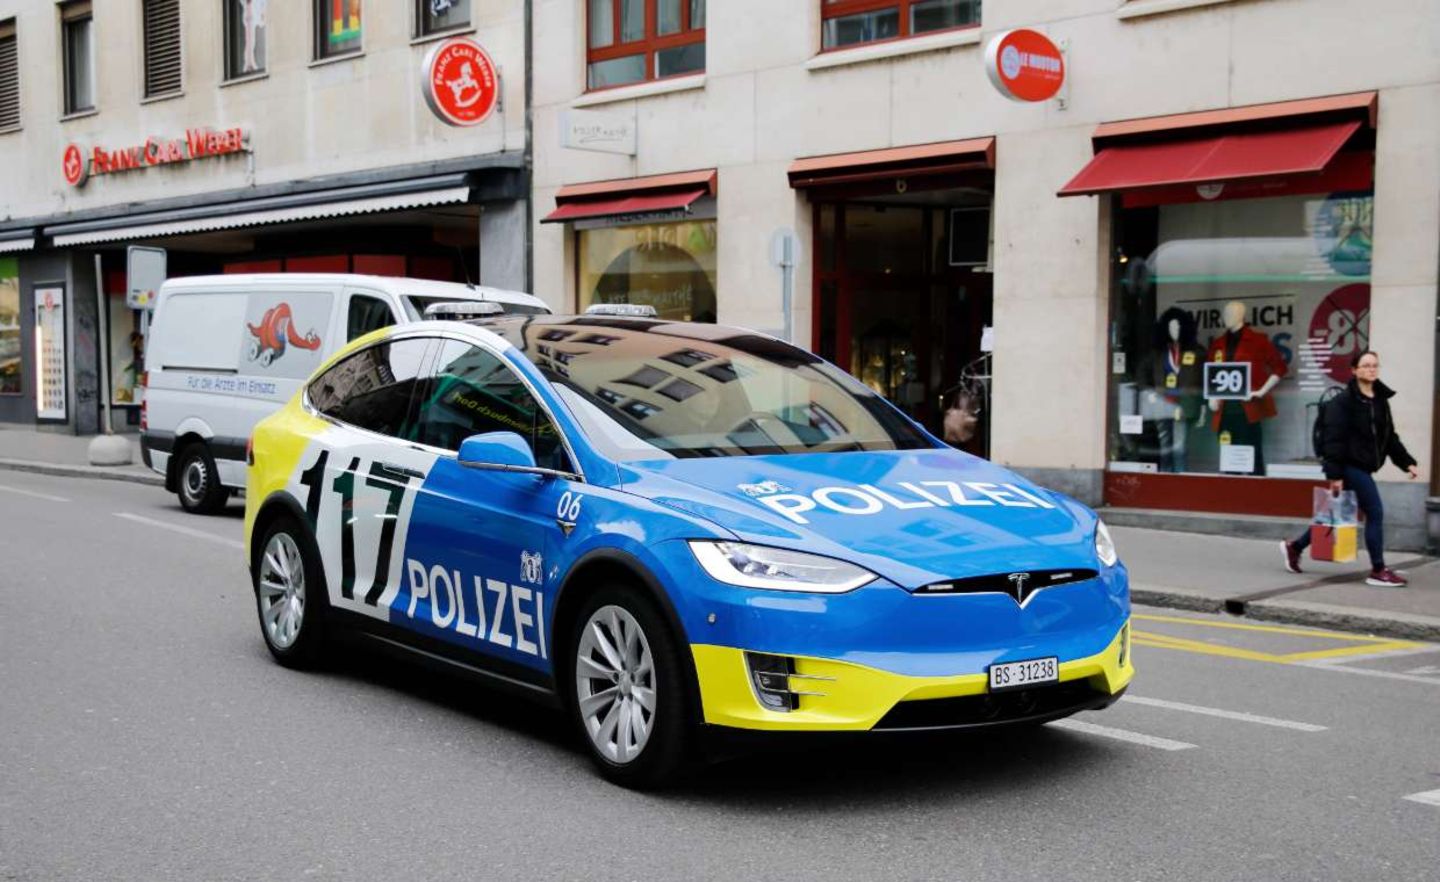 Die Schweizer Polizei hat E-Autos von Tesla im Einsatz. Zuvor mussten datenschutzrechtliche Bedenken ausgeräumt werden